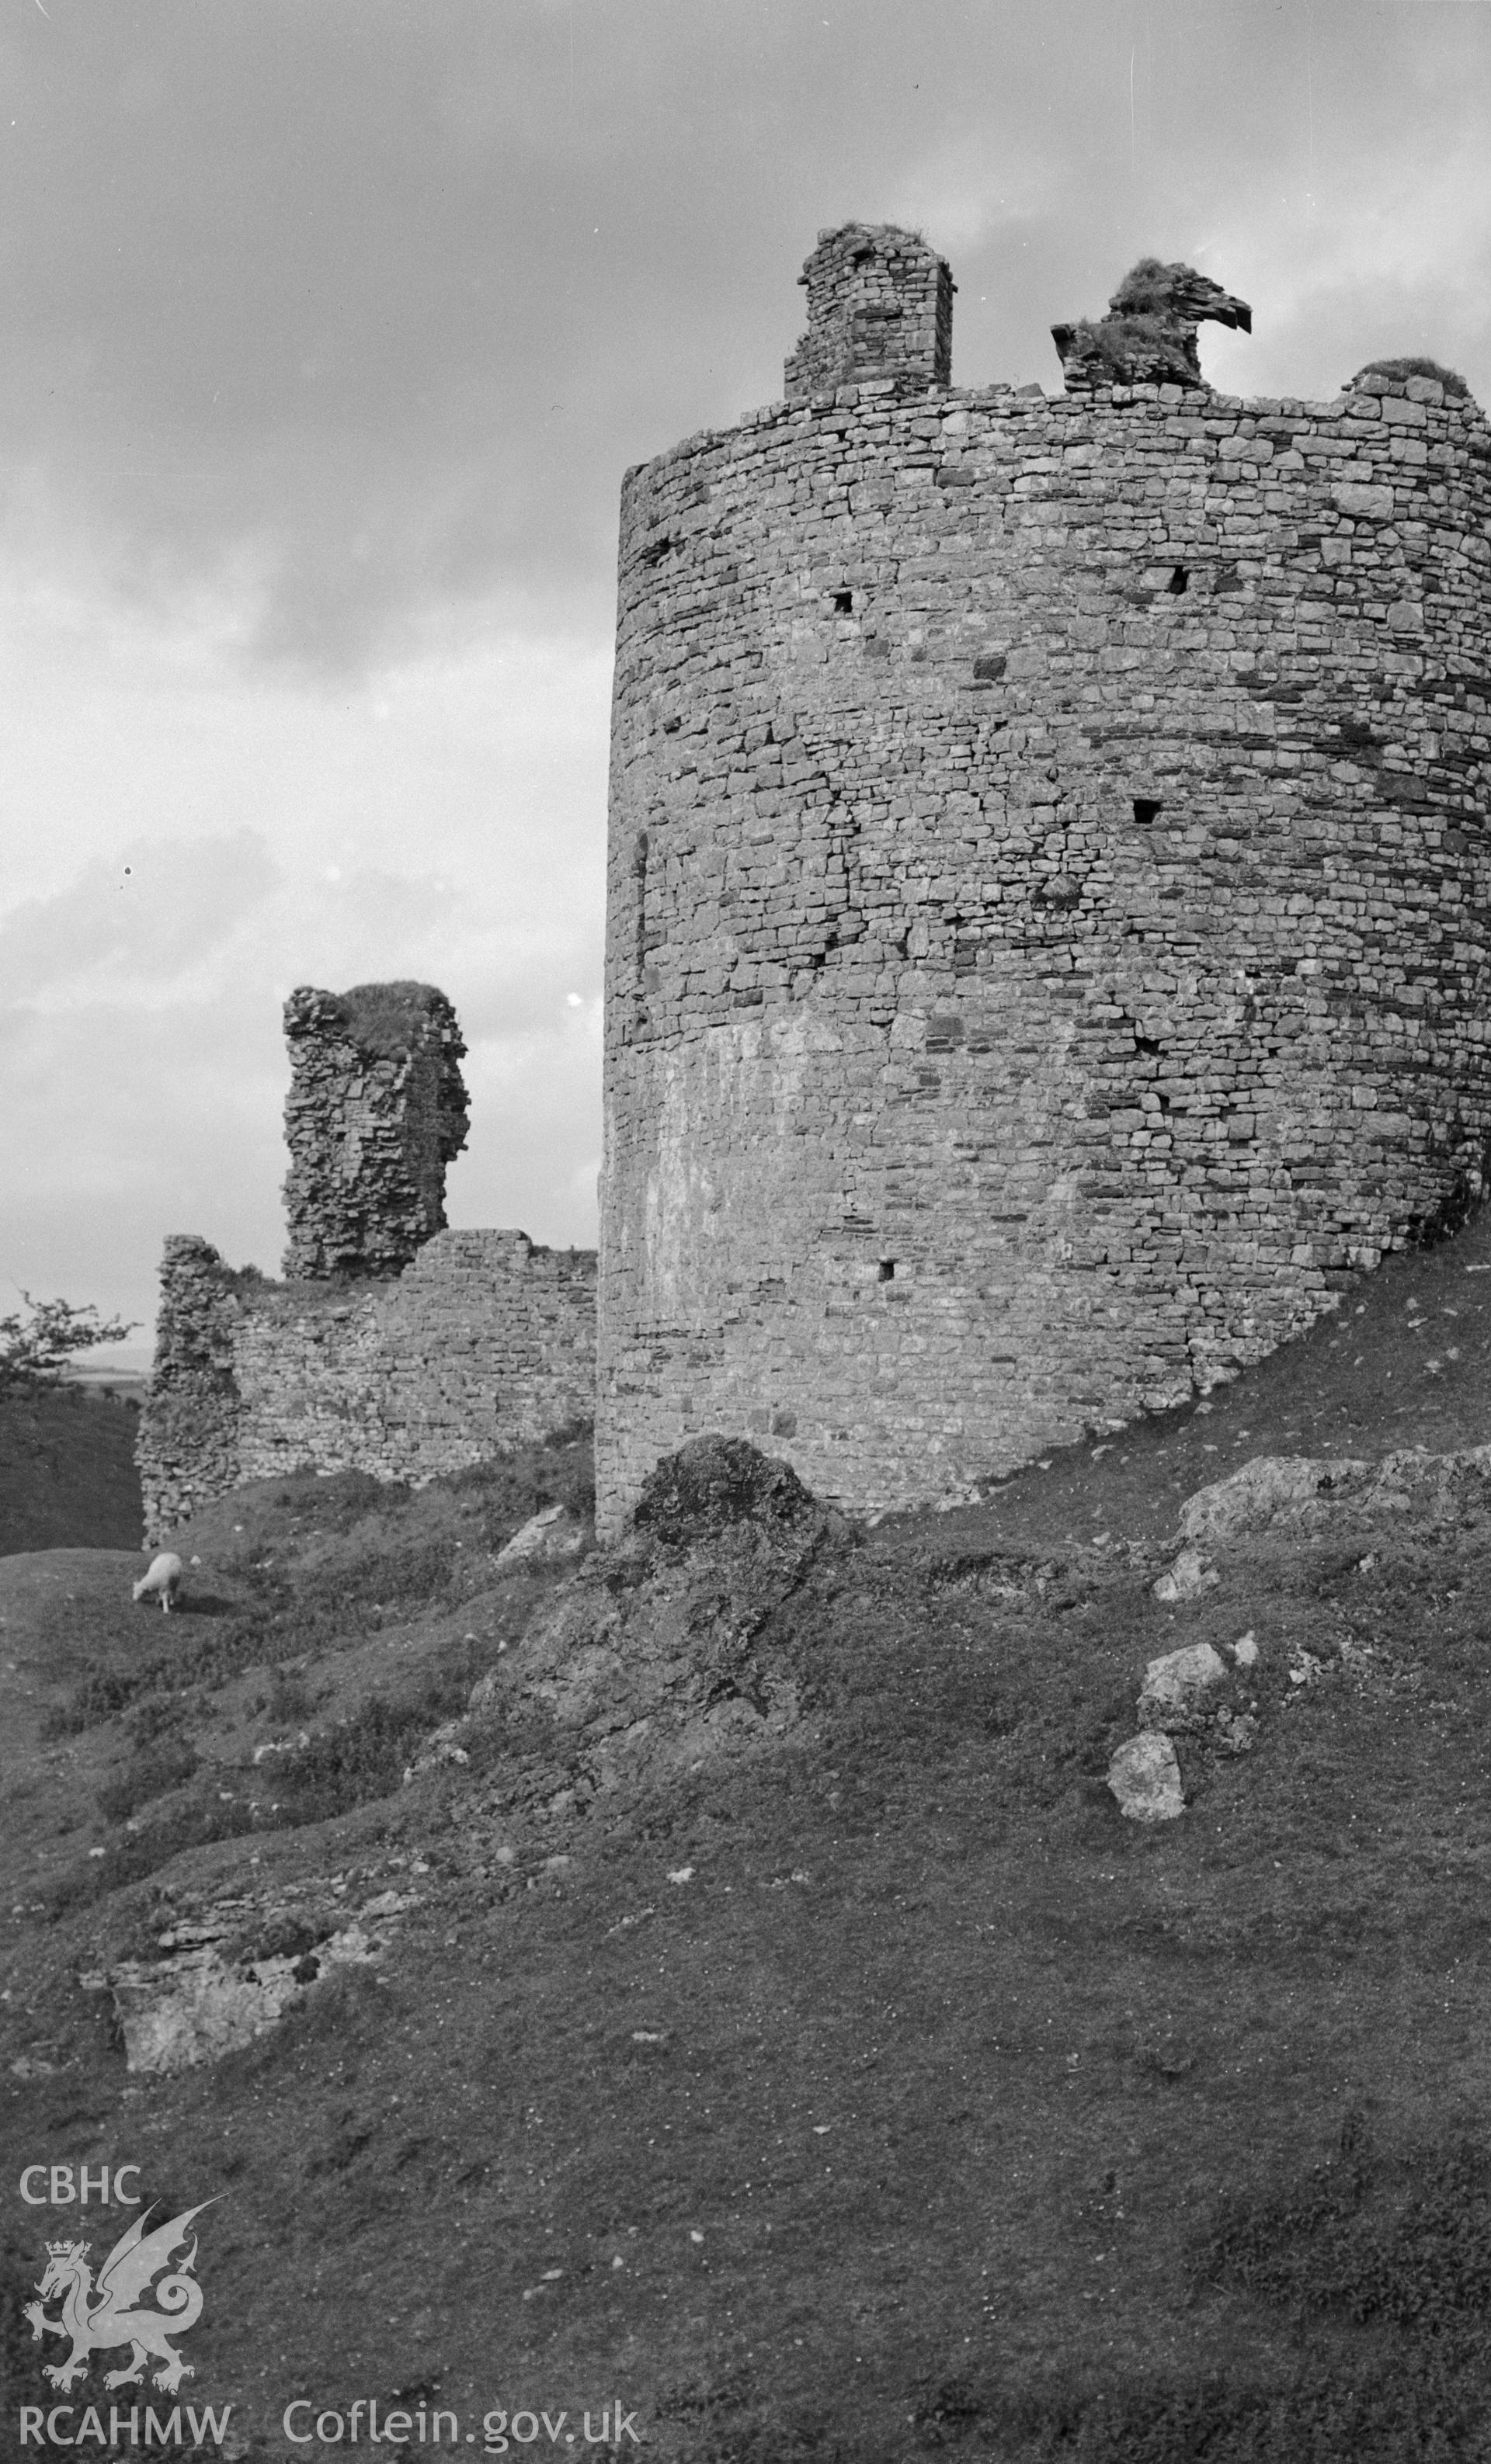 D.O.E photographs of Carreg Cennen Castle.